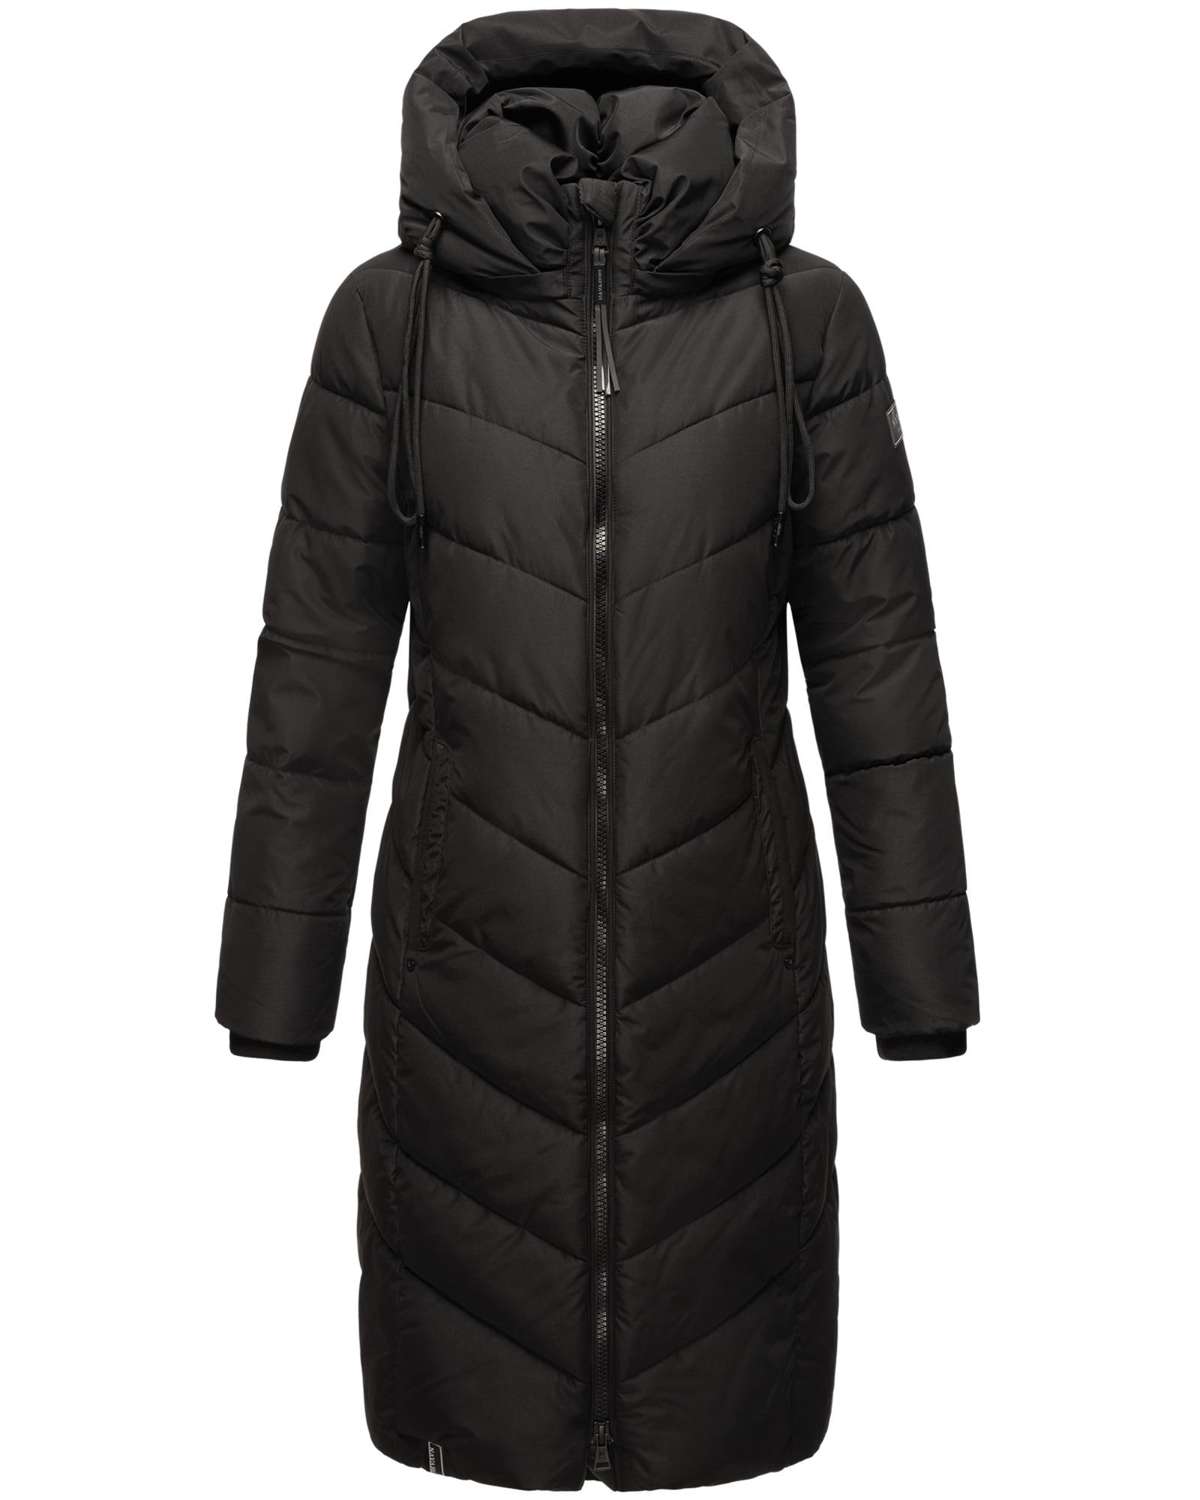 Стеганое пальто, шикарное зимнее пальто с уютным, теплым стеганым воротником.